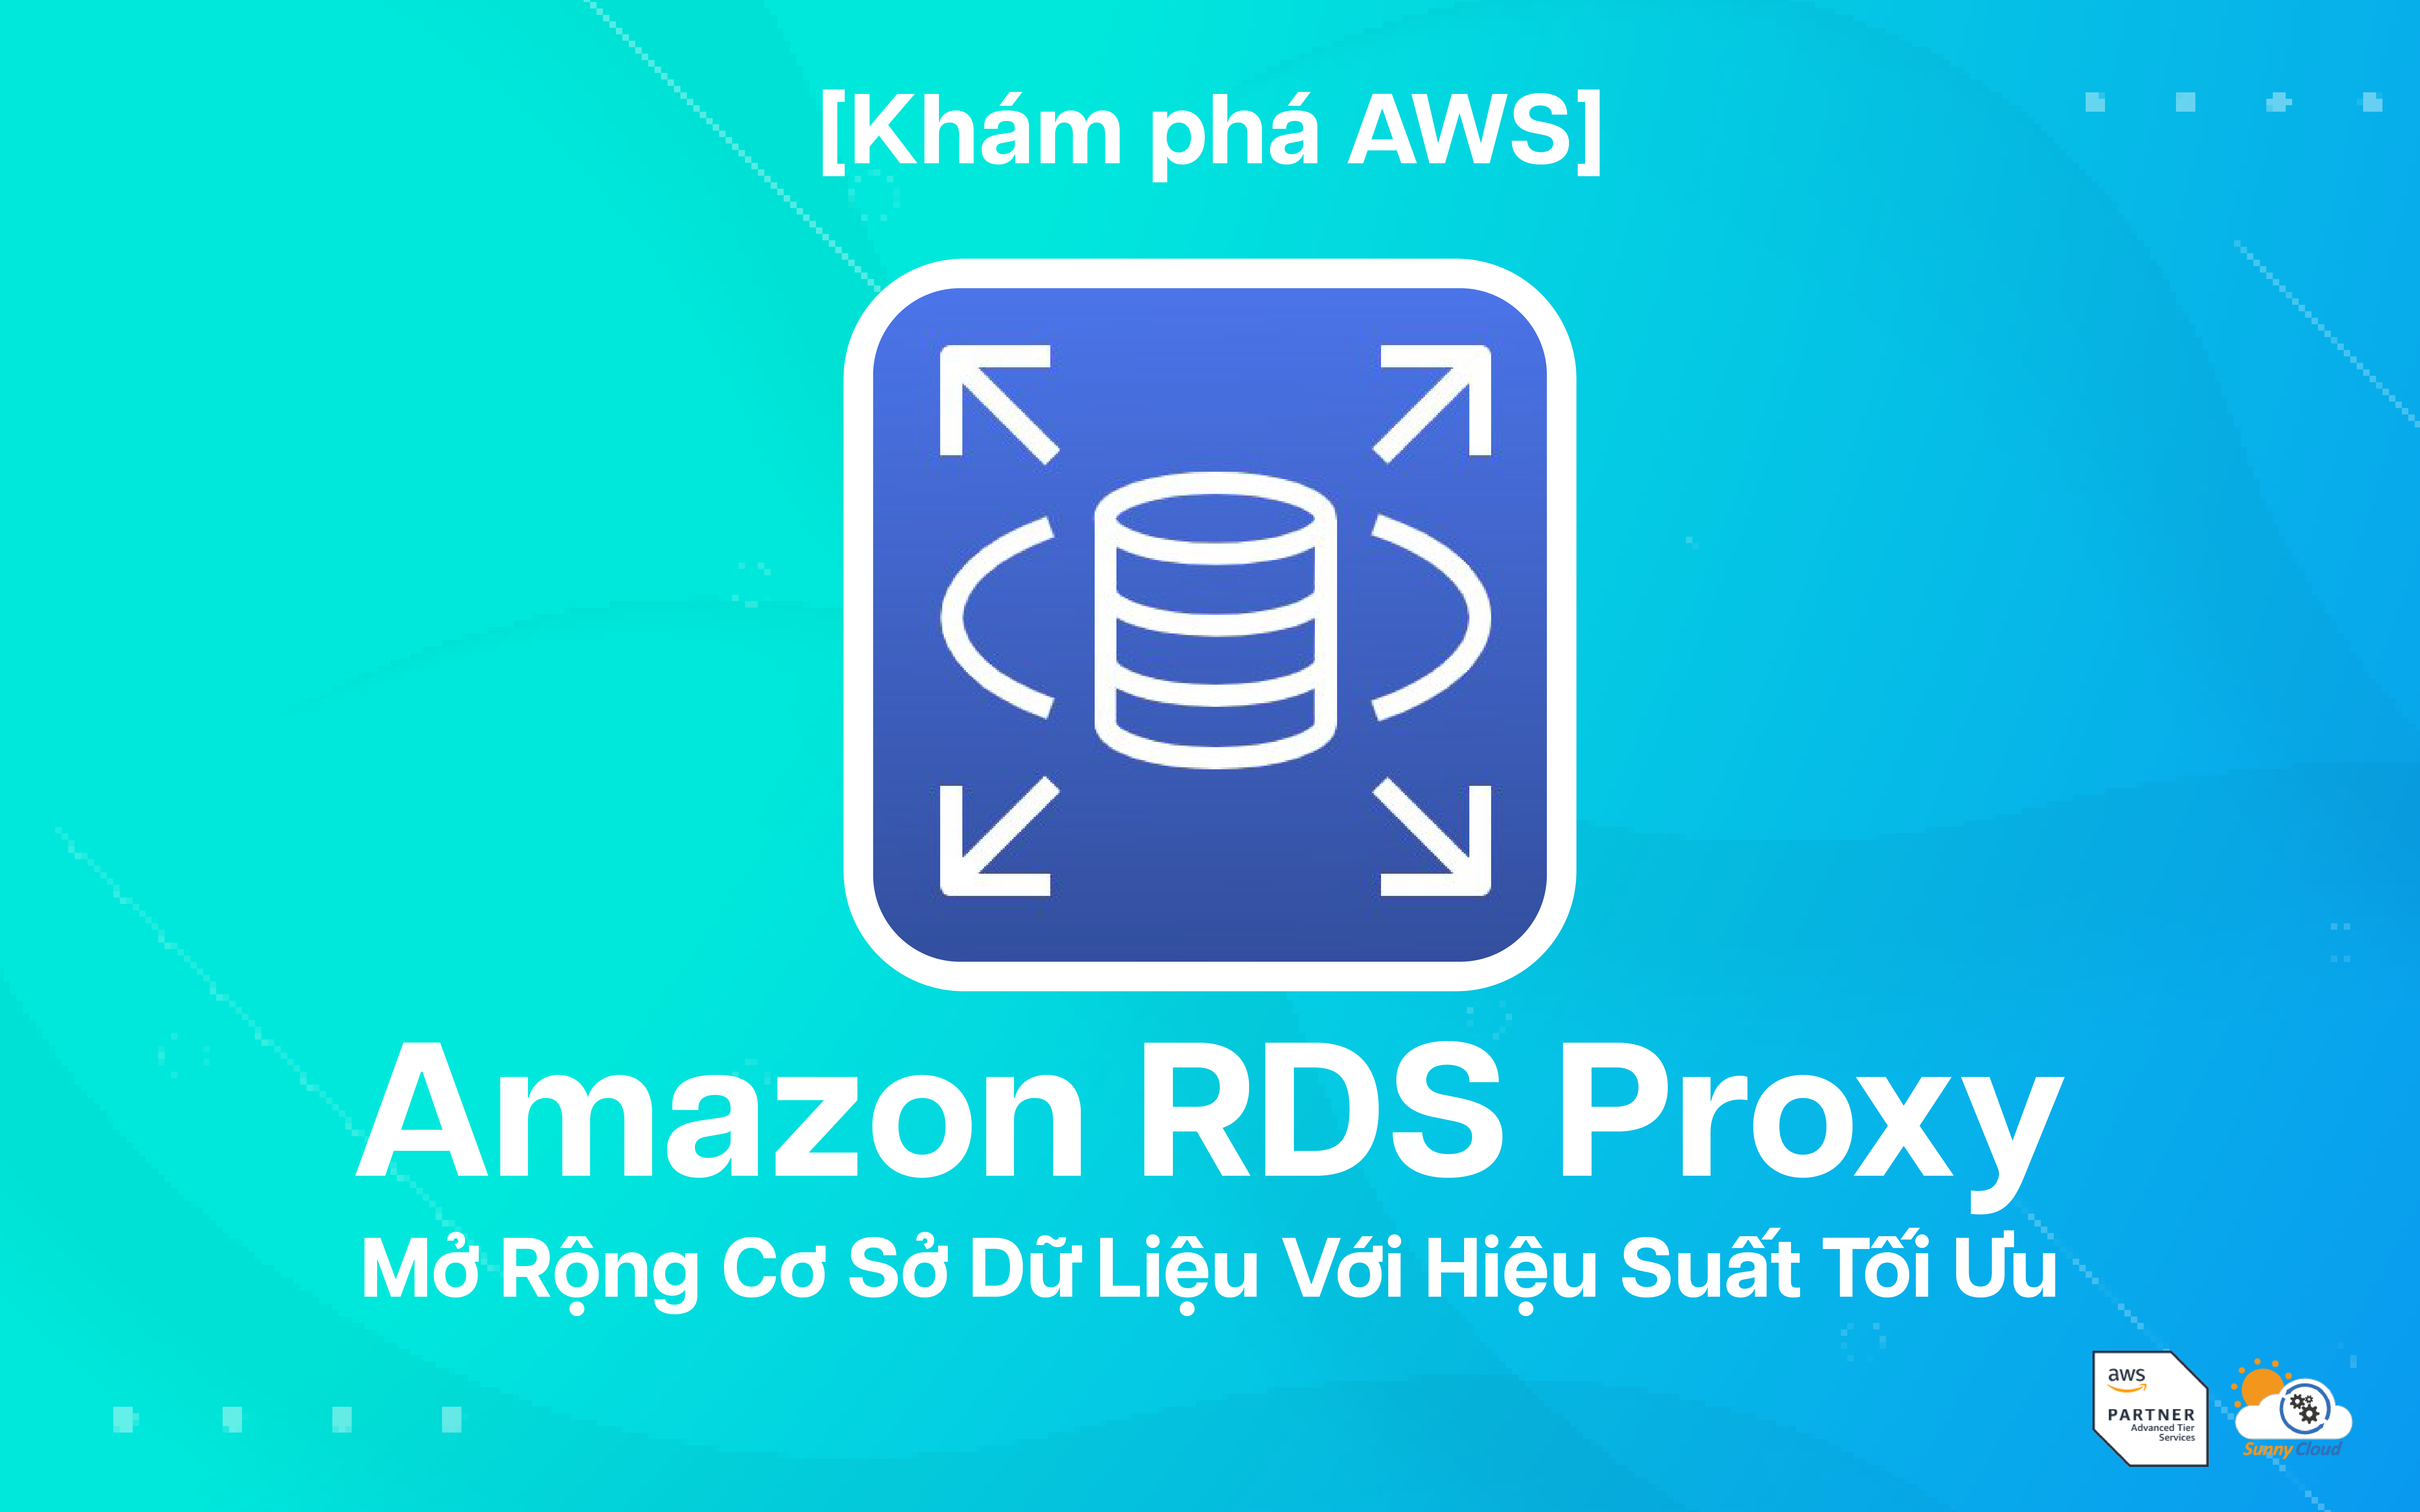 Amazon RDS Proxy – Mở Rộng Cơ Sở Dữ Liệu Với Hiệu Suất Tối Ưu